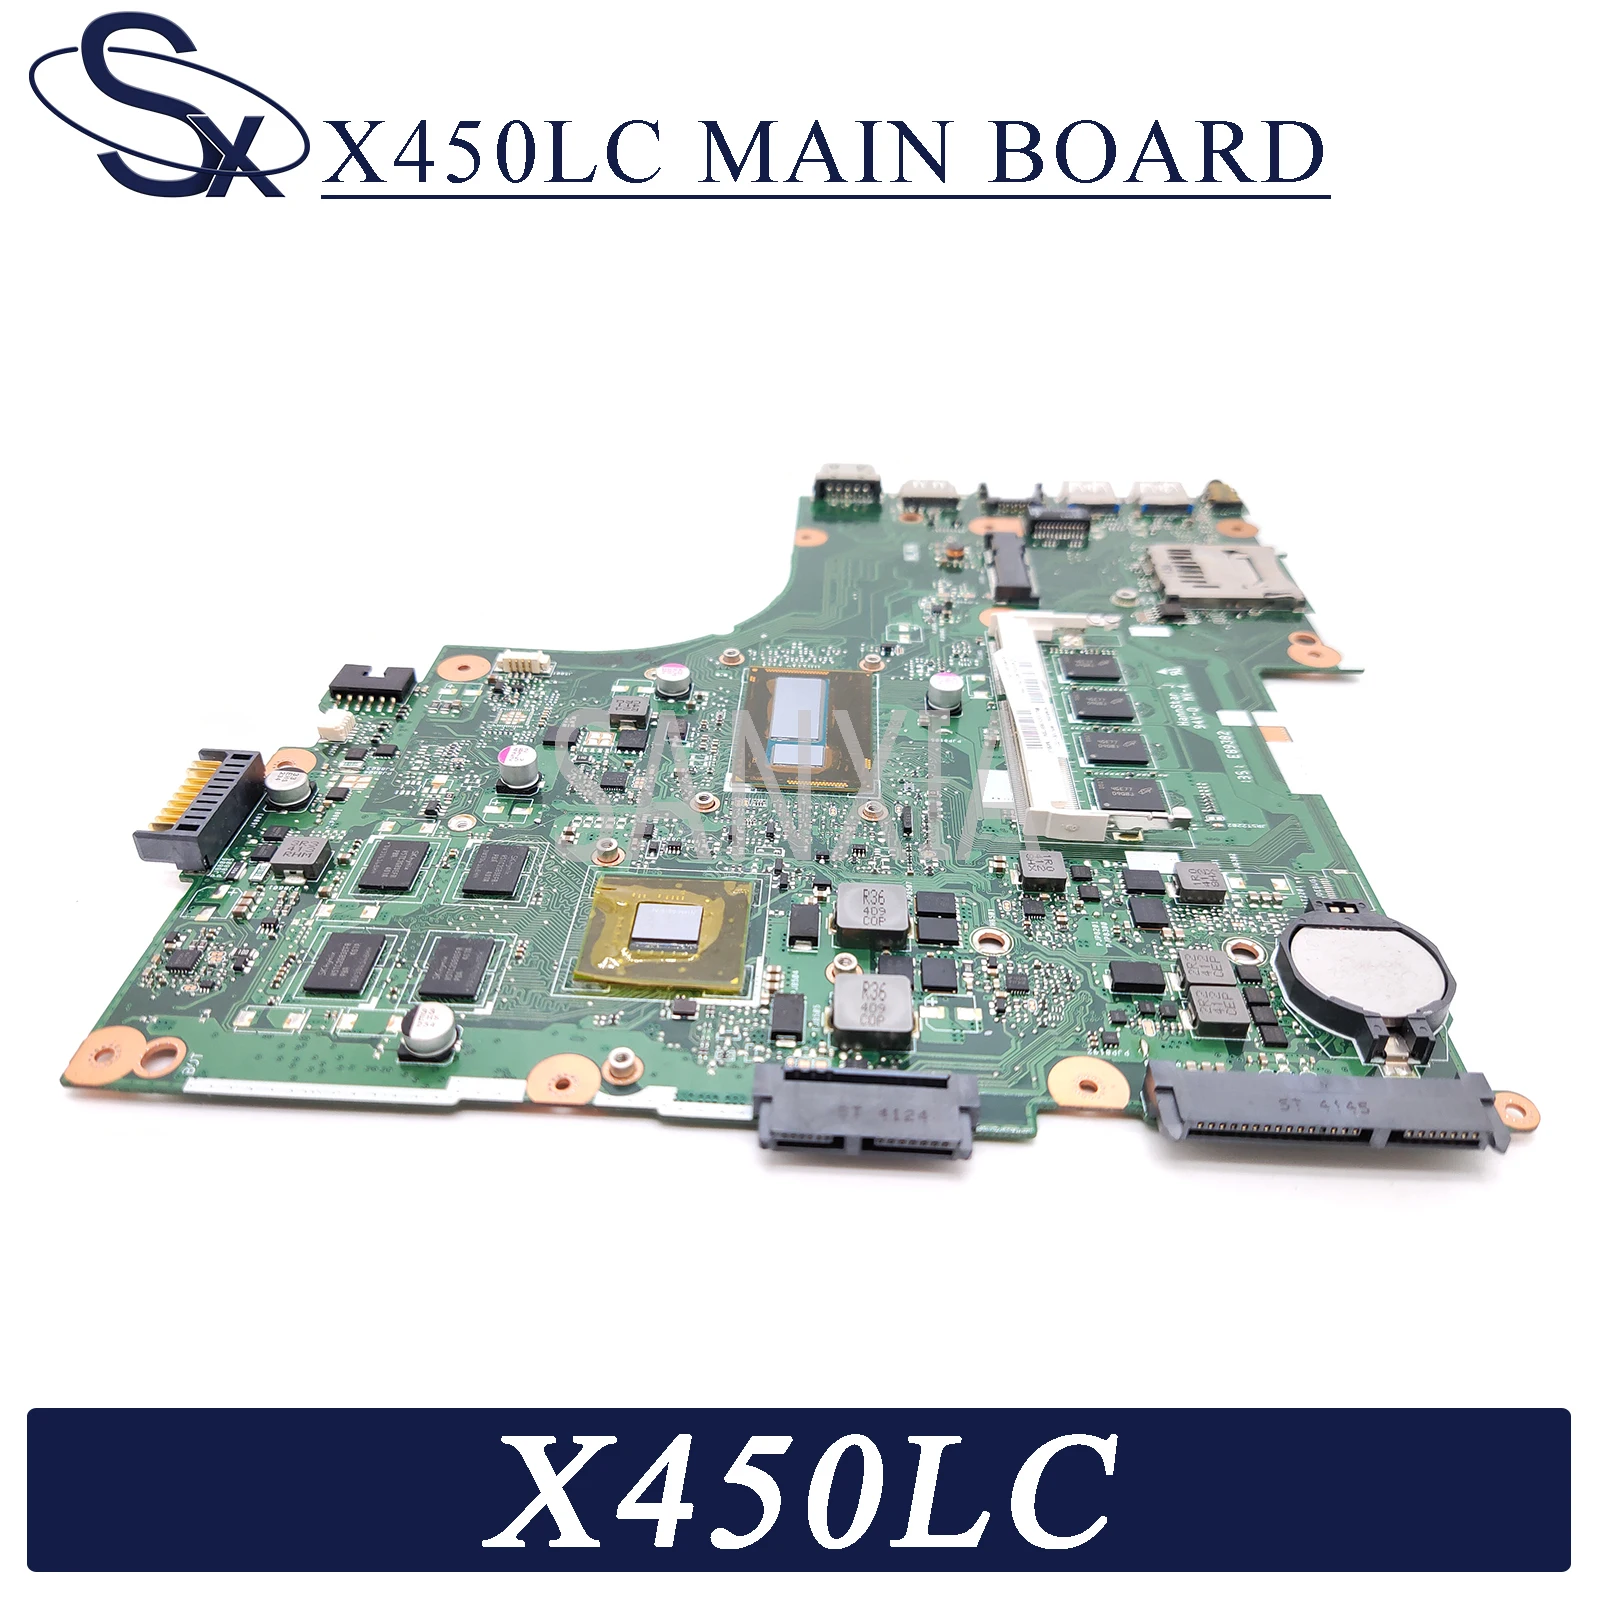 KEFU X450LC Nešiojamojo kompiuterio motininė plokštė, skirta ASUS X450LC X450LD X450LB X450L originalus mainboard 4GB-RAM I7-4500U GT720M-2GB